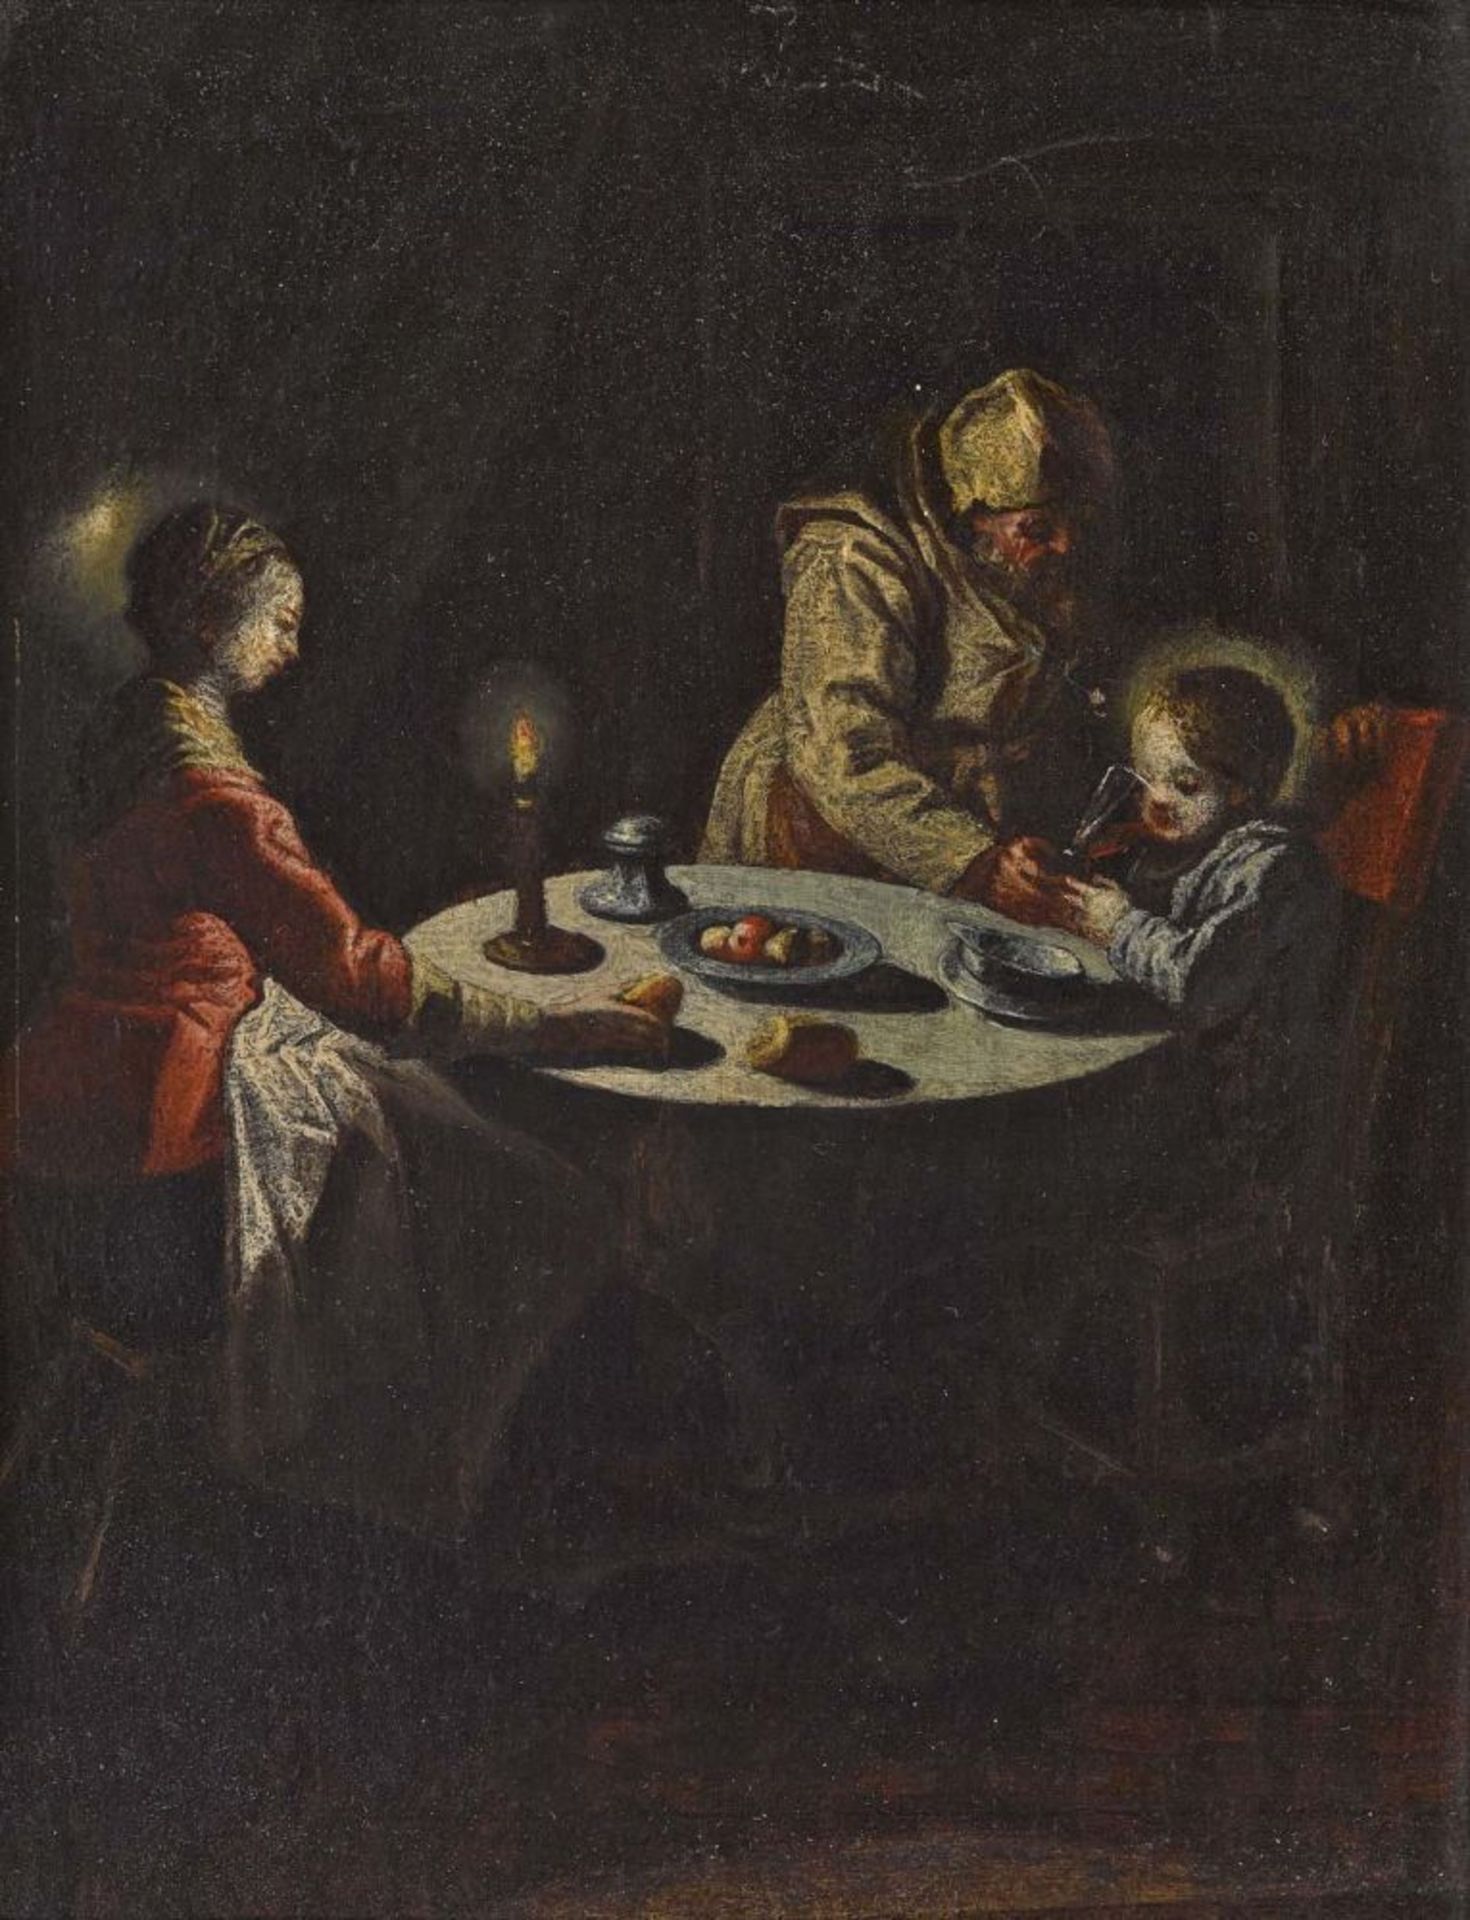 Unbekannt 18. Jh. (?)  Die Heilige Familie bei Tisch  L. u. bezeichnet "F. van Mieris". Öl auf Holz.